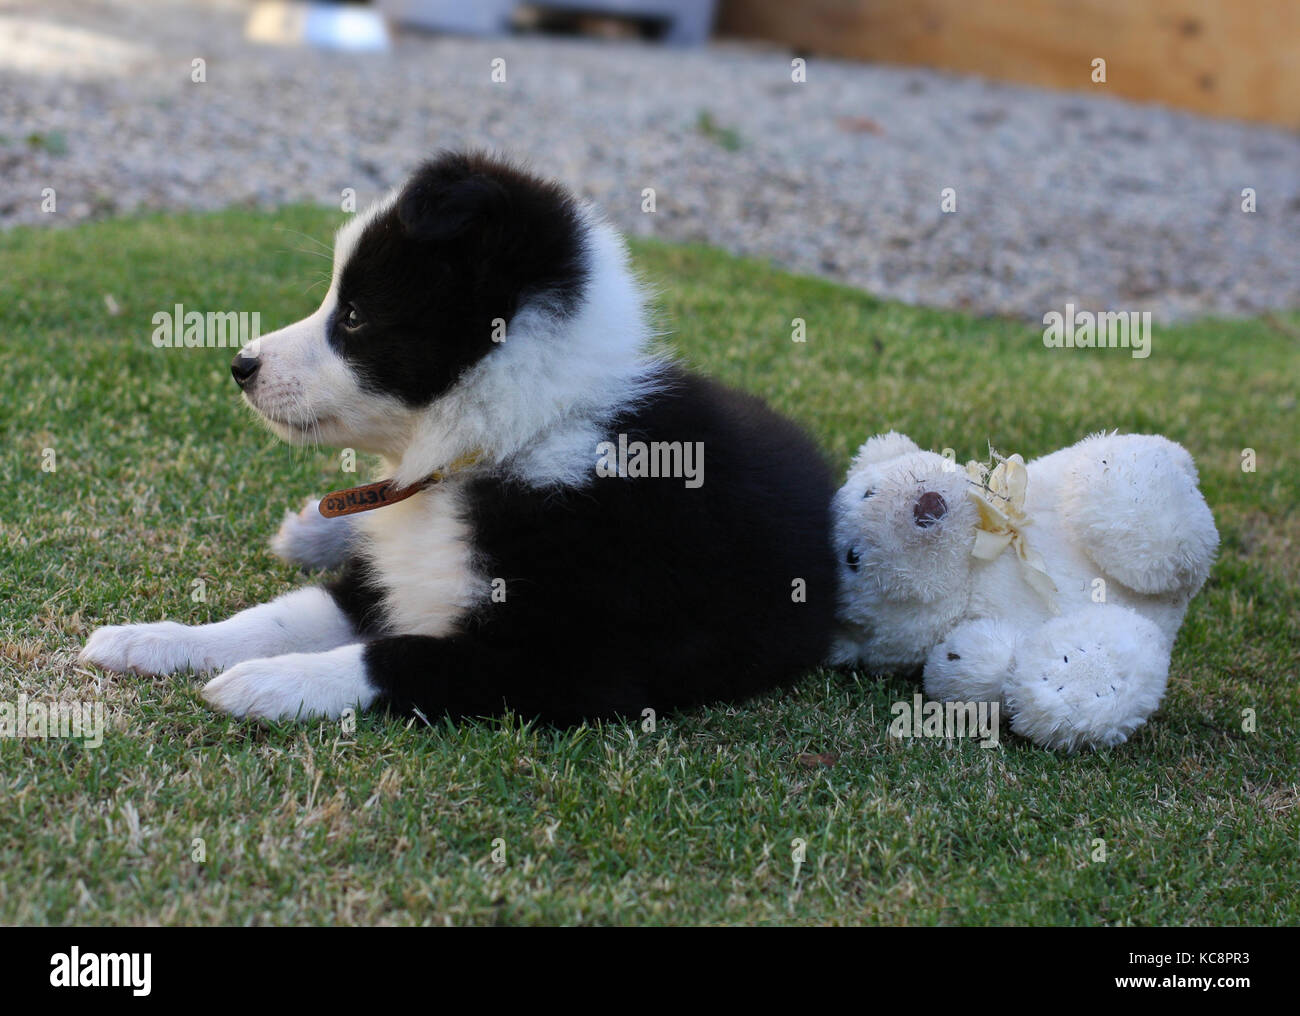 El Bebe Toma Un Descanso Un Dulce Cachorro De Border Collie Con Su Oso De Peluche Fotografia De Stock Alamy